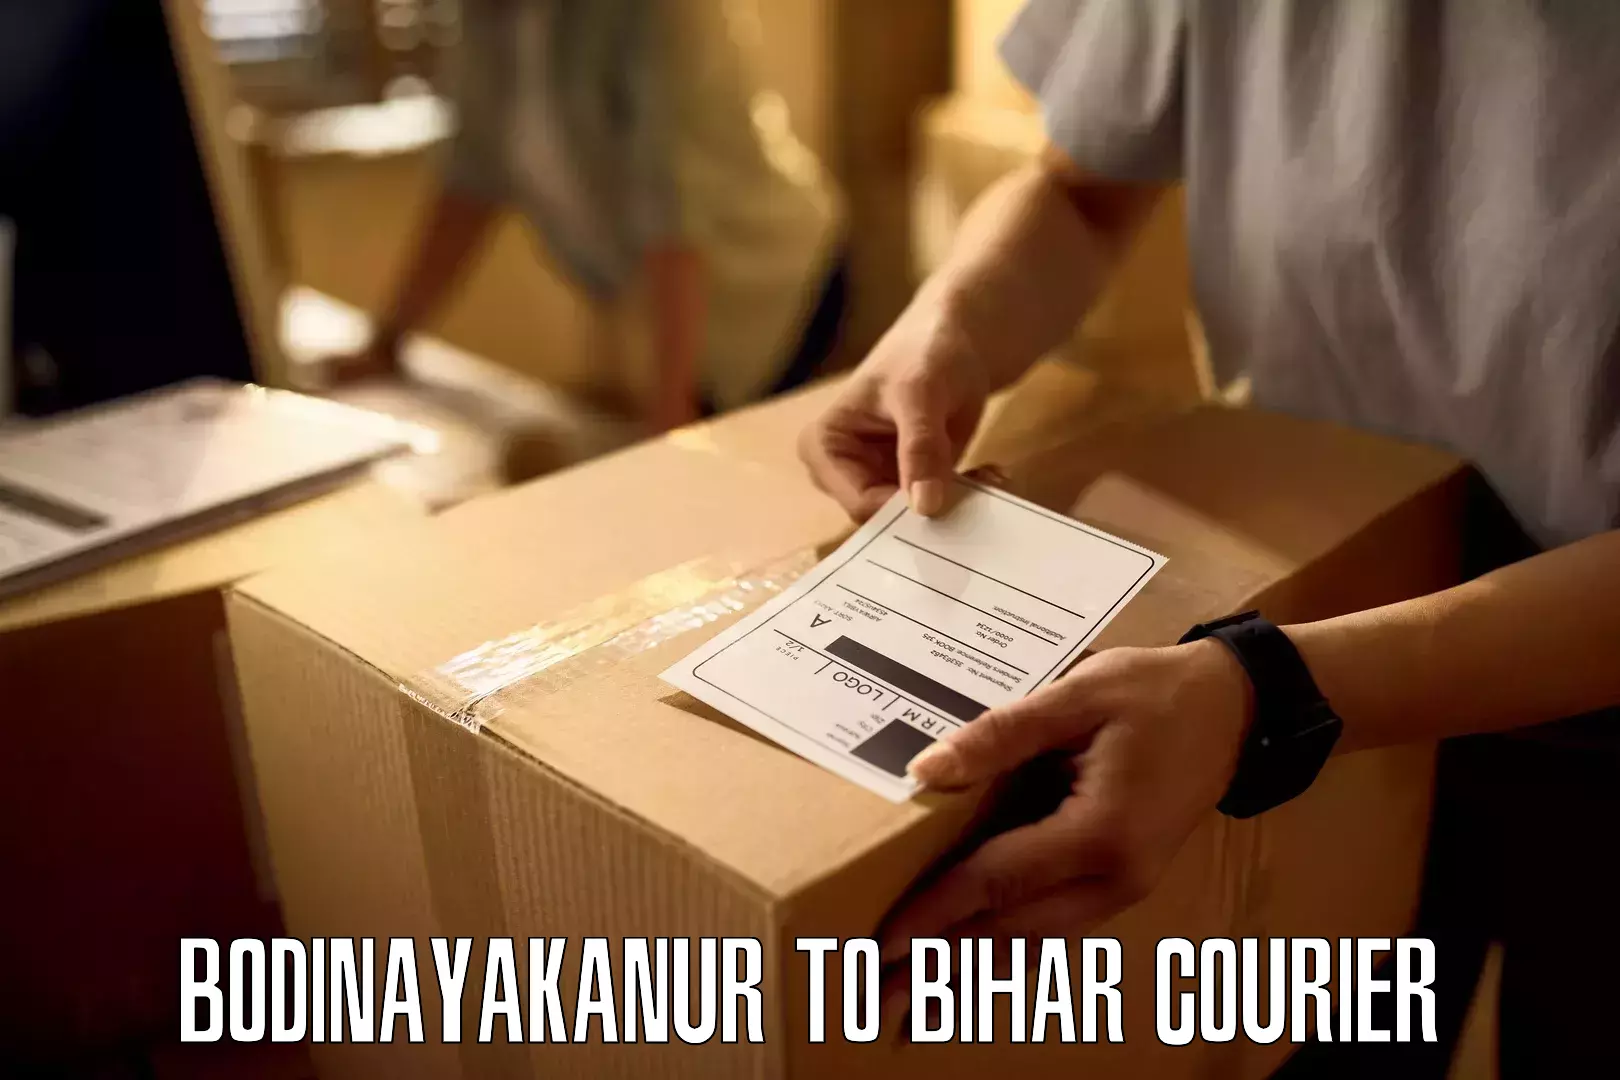 Customer-centric shipping Bodinayakanur to Bihar